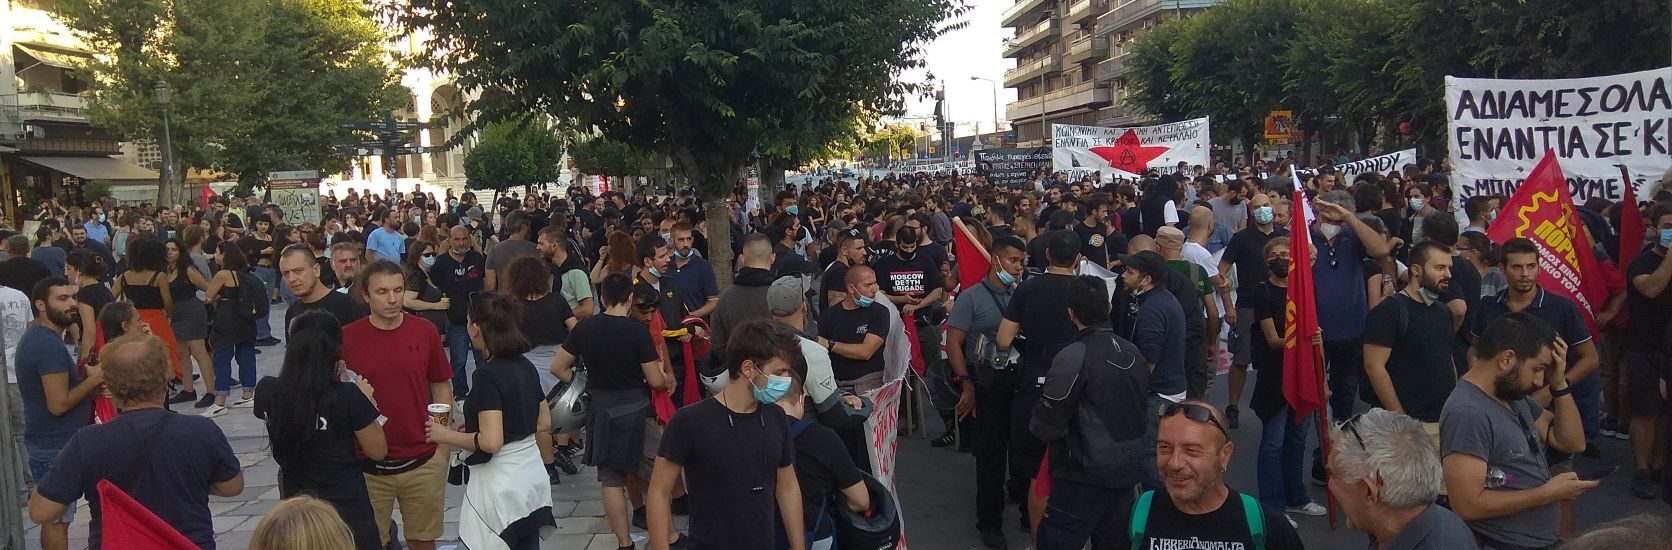 Μαζική διαδήλωση στη ΔΕΘ - Χιλιάδες στο μπλοκ της Καμάρας